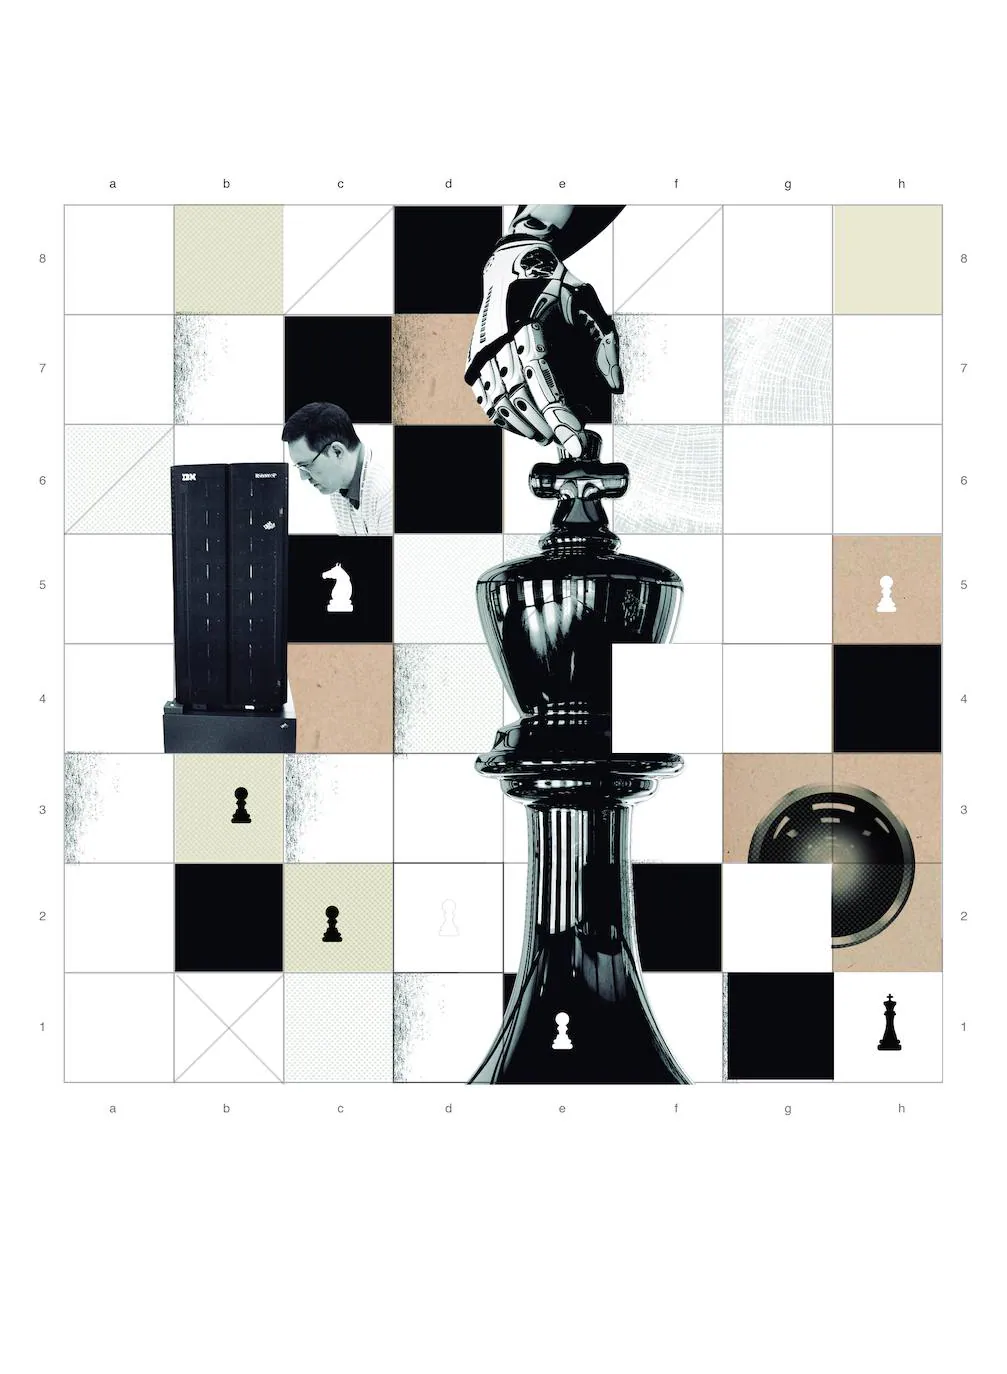 Jugar ajedrez contra la maquina Stockfish